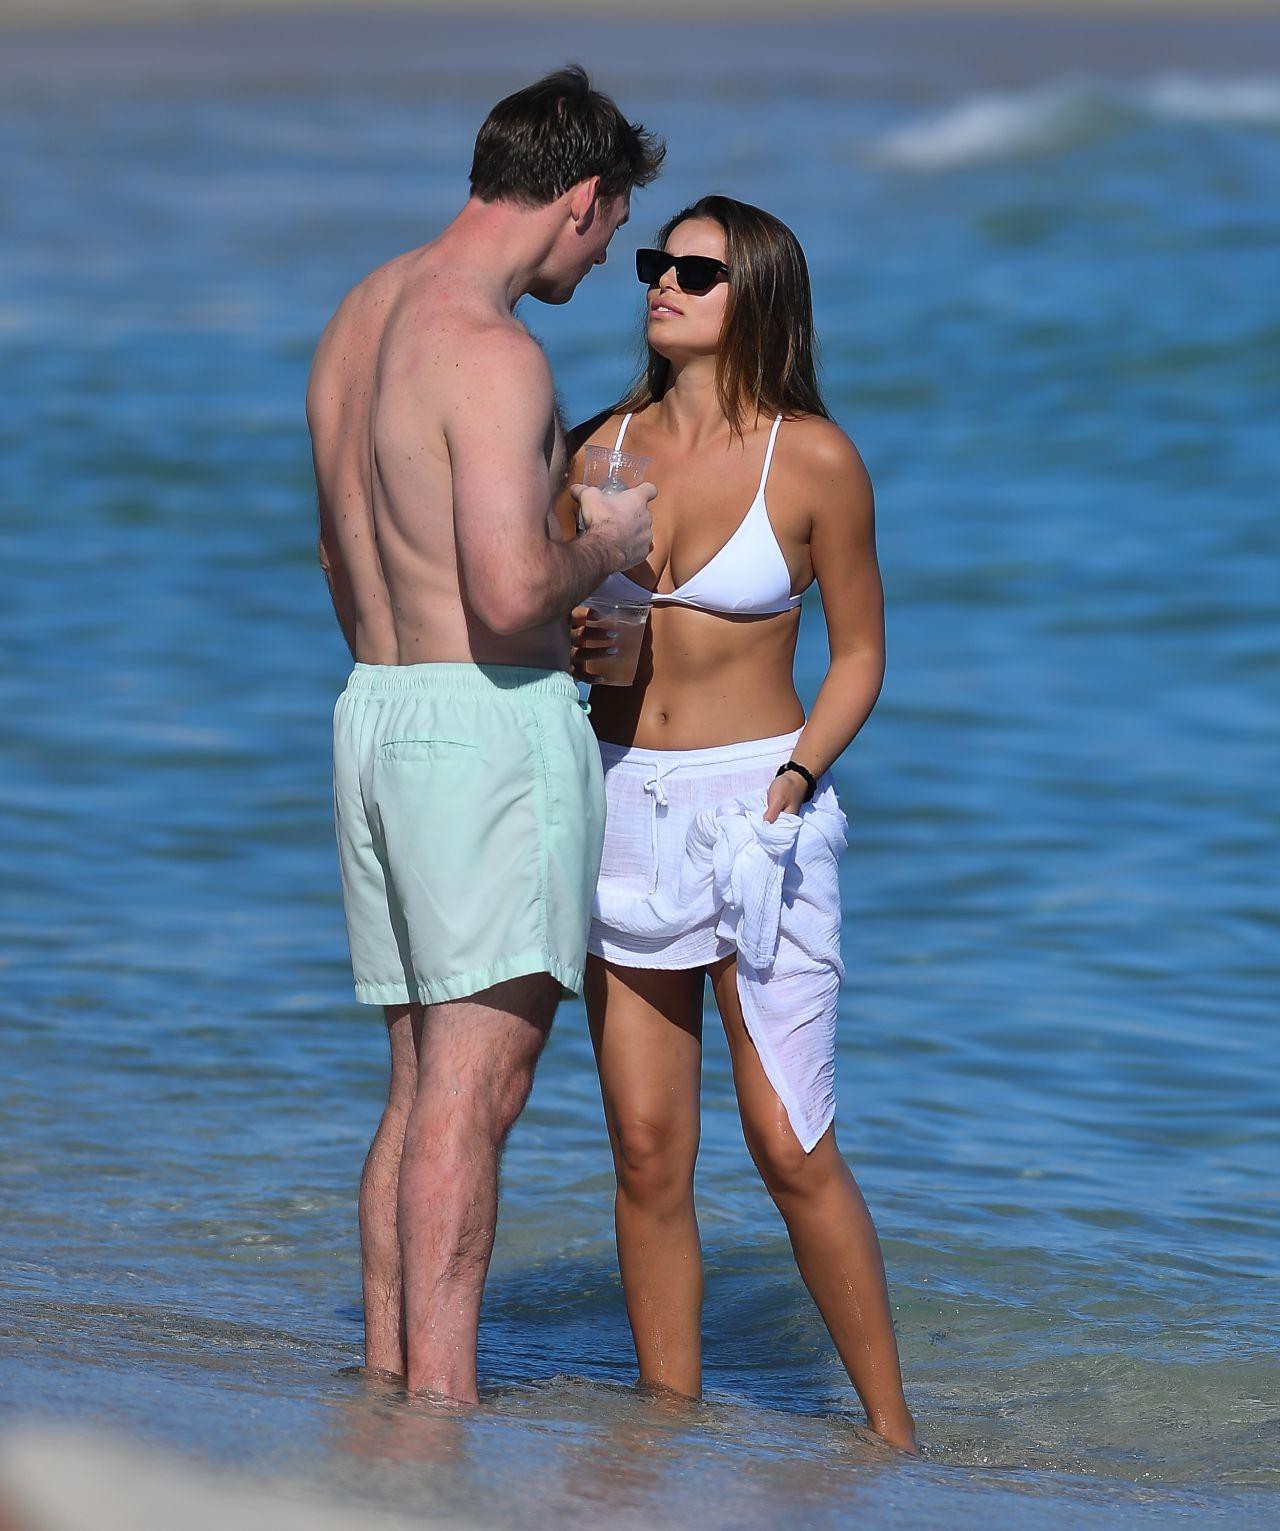 Mẫu áo tắm Brooks Nader cực nóng bỏng với bikini ở biển - Ảnh 7.